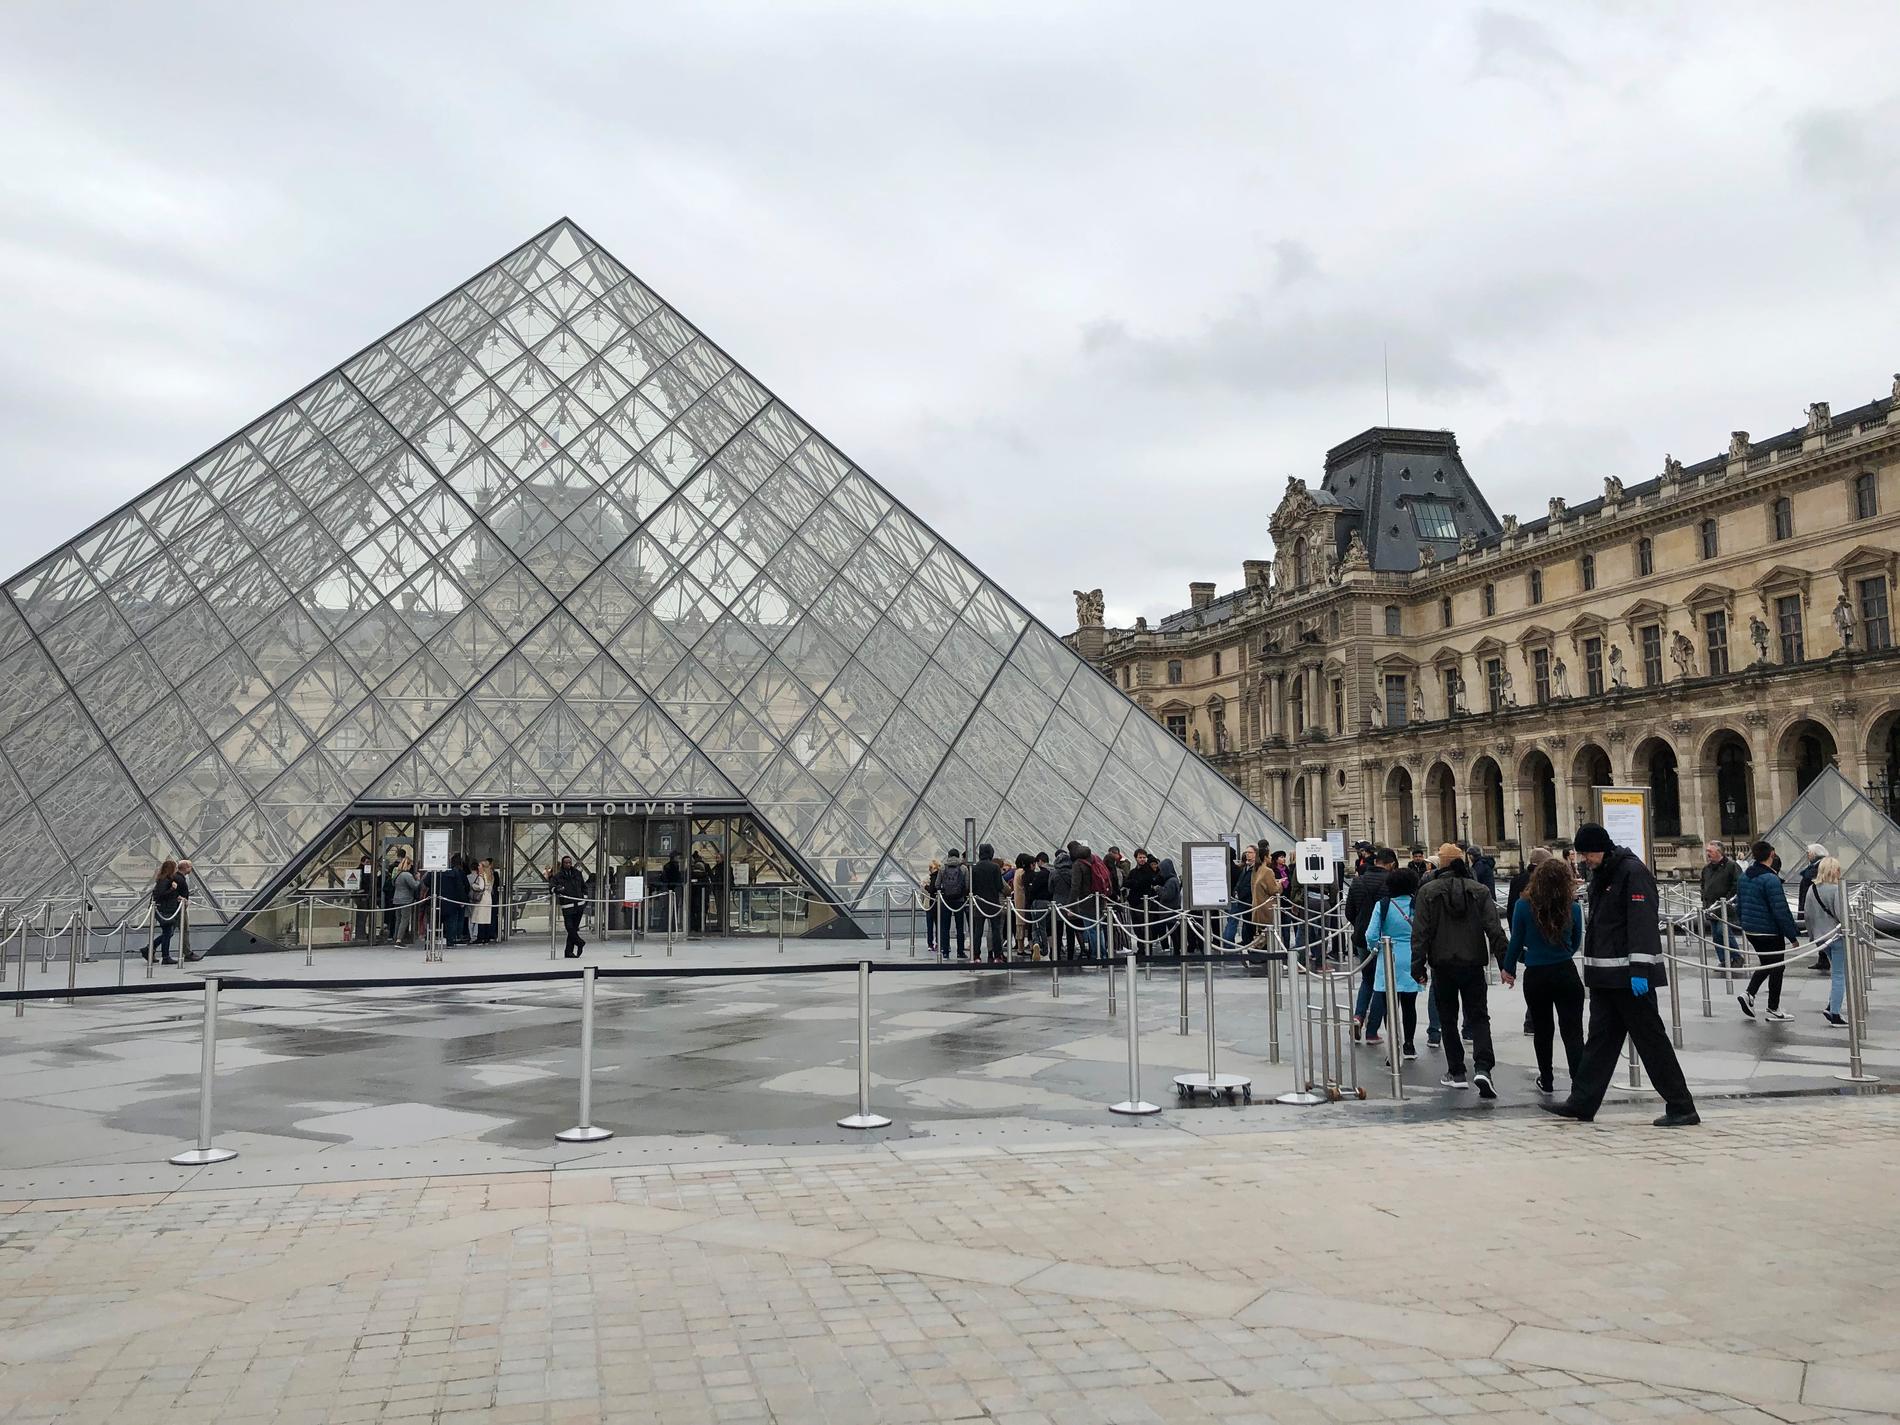 Kön in till Louvren i Paris är betydligt kortare än normalt när många turister väljer att stanna hemma på grund av coronaviruset.